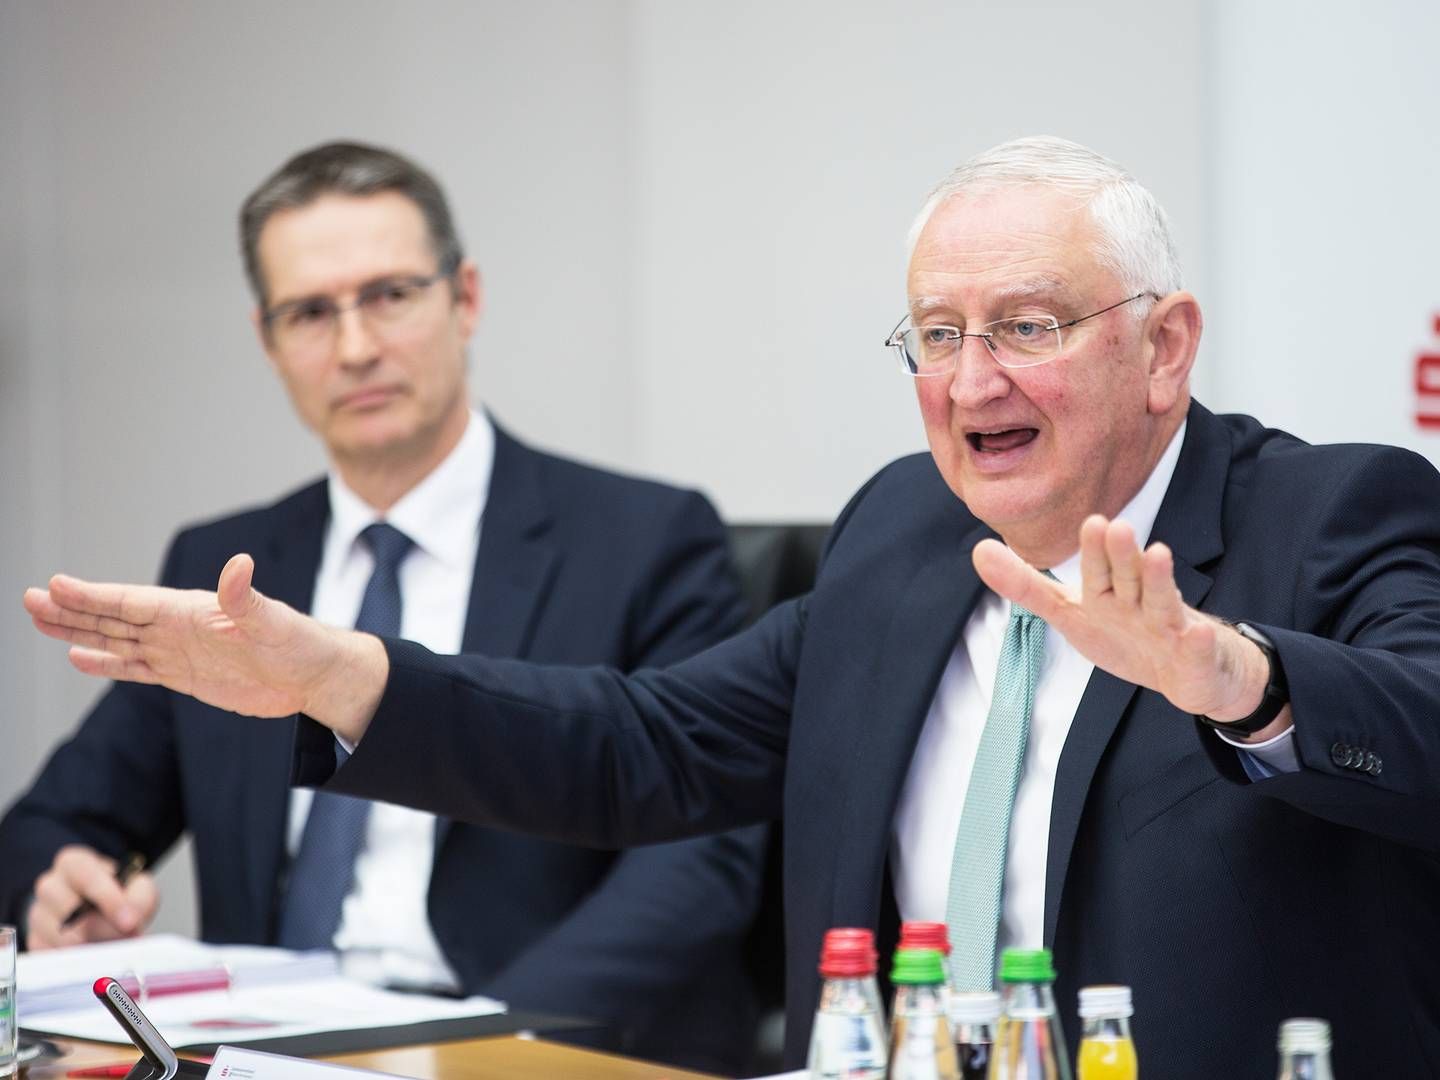 Sparkassenpräsident Peter Schneider (r.) und Verbandsgeschäftsführer Ralf Bäuerle. | Photo: SVBW / Ines Rudel